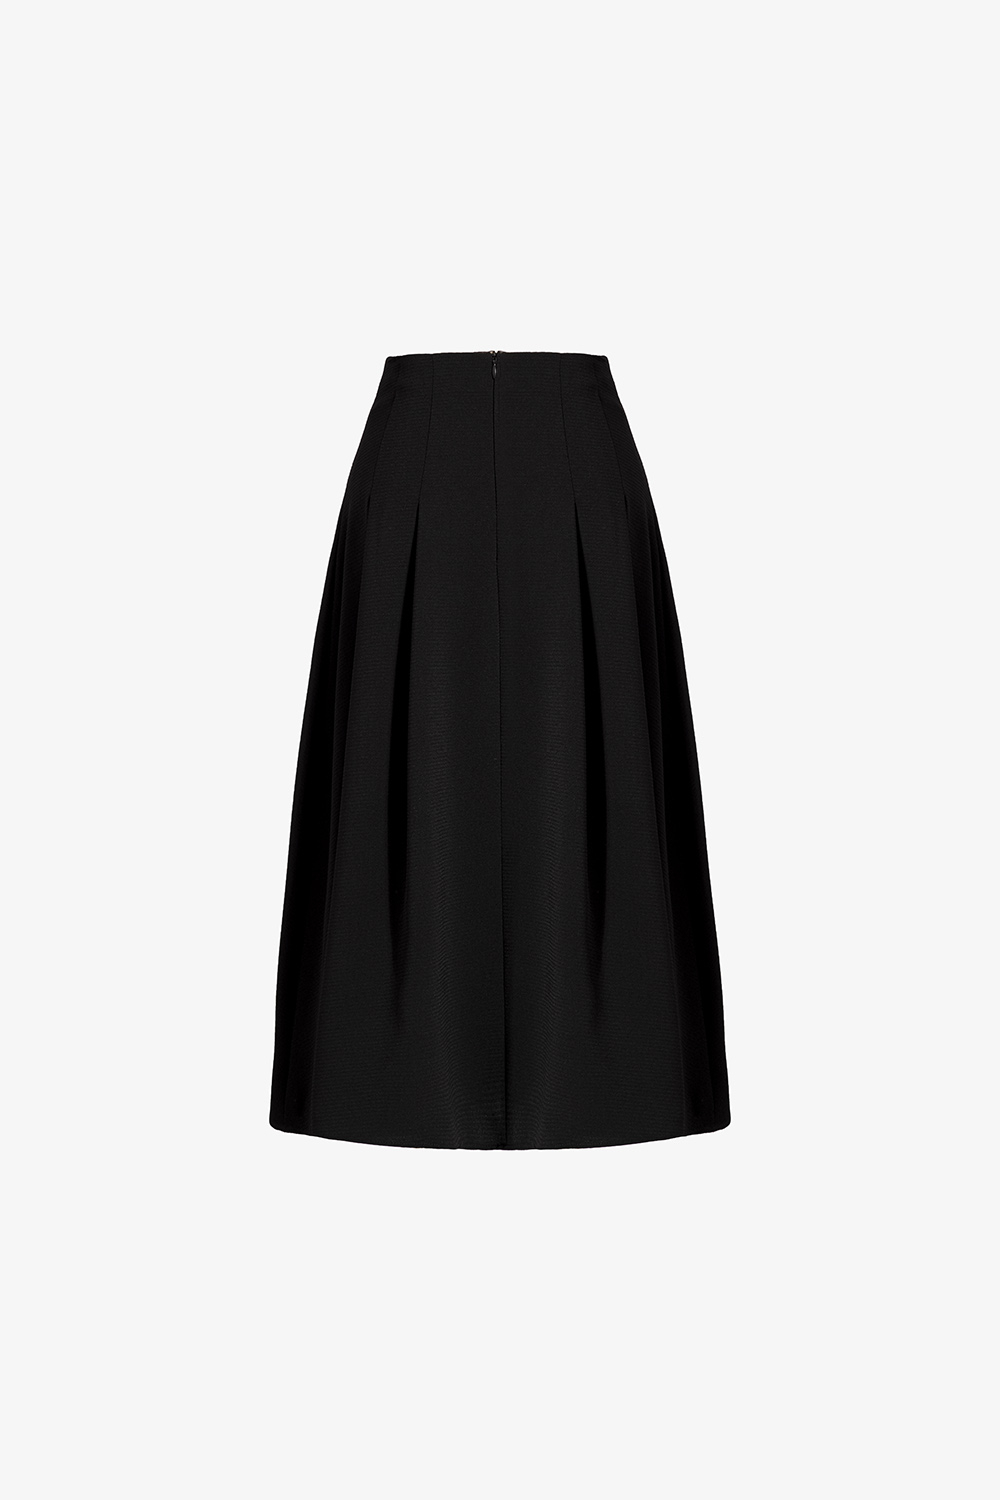 Chân váy xòe ngắn cho bạn nữ - màu đen giá rẻ nhất tháng 3/2024